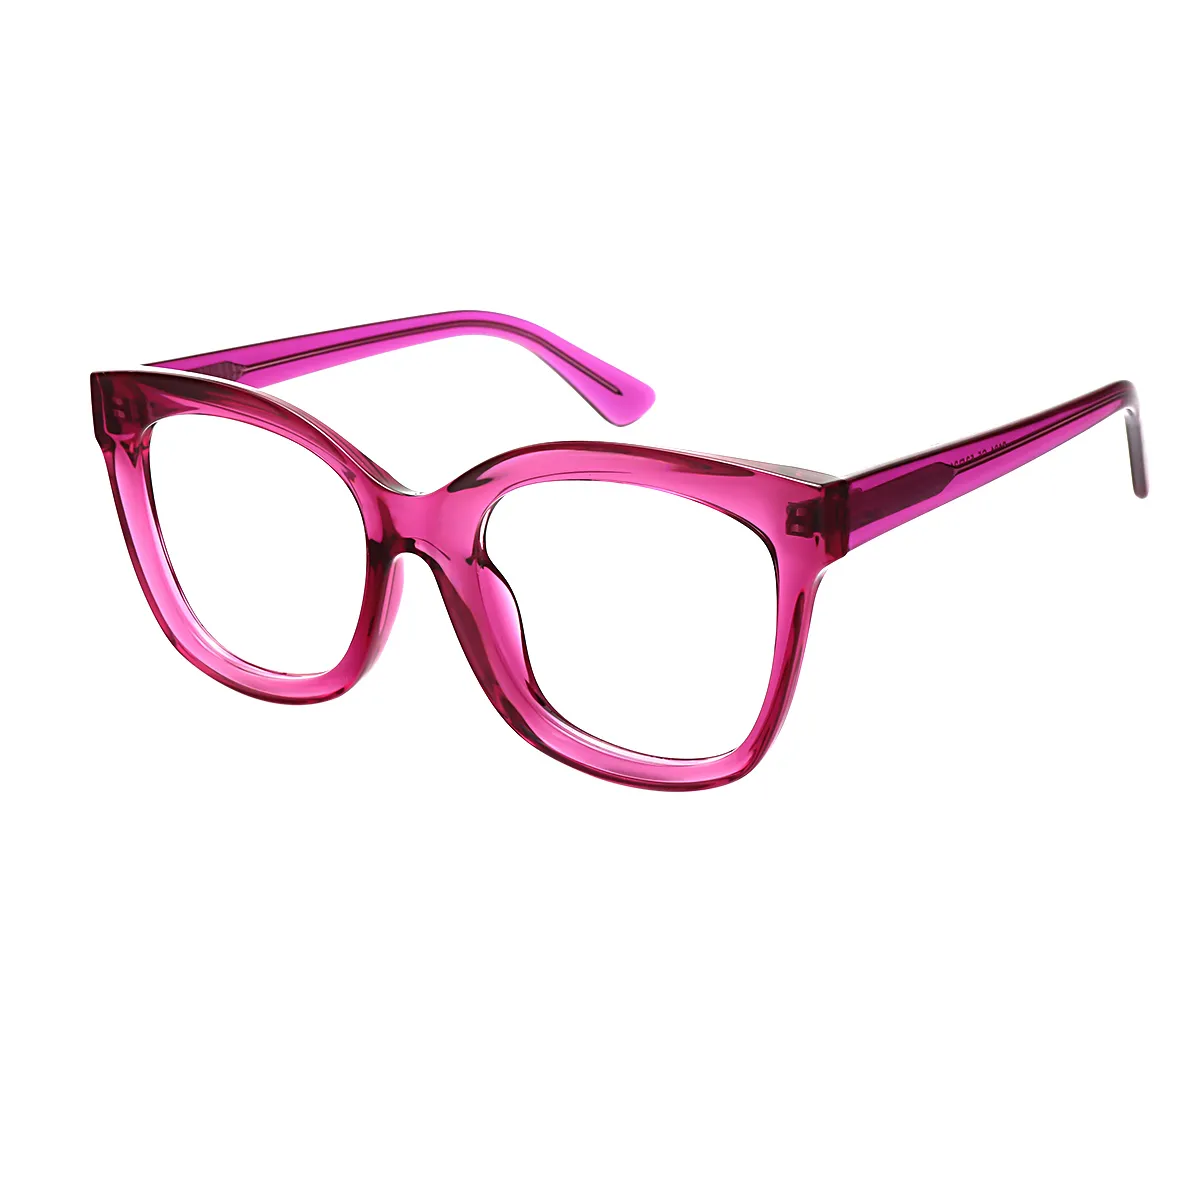 Emblem - Cat-eye Red Glasses for Women